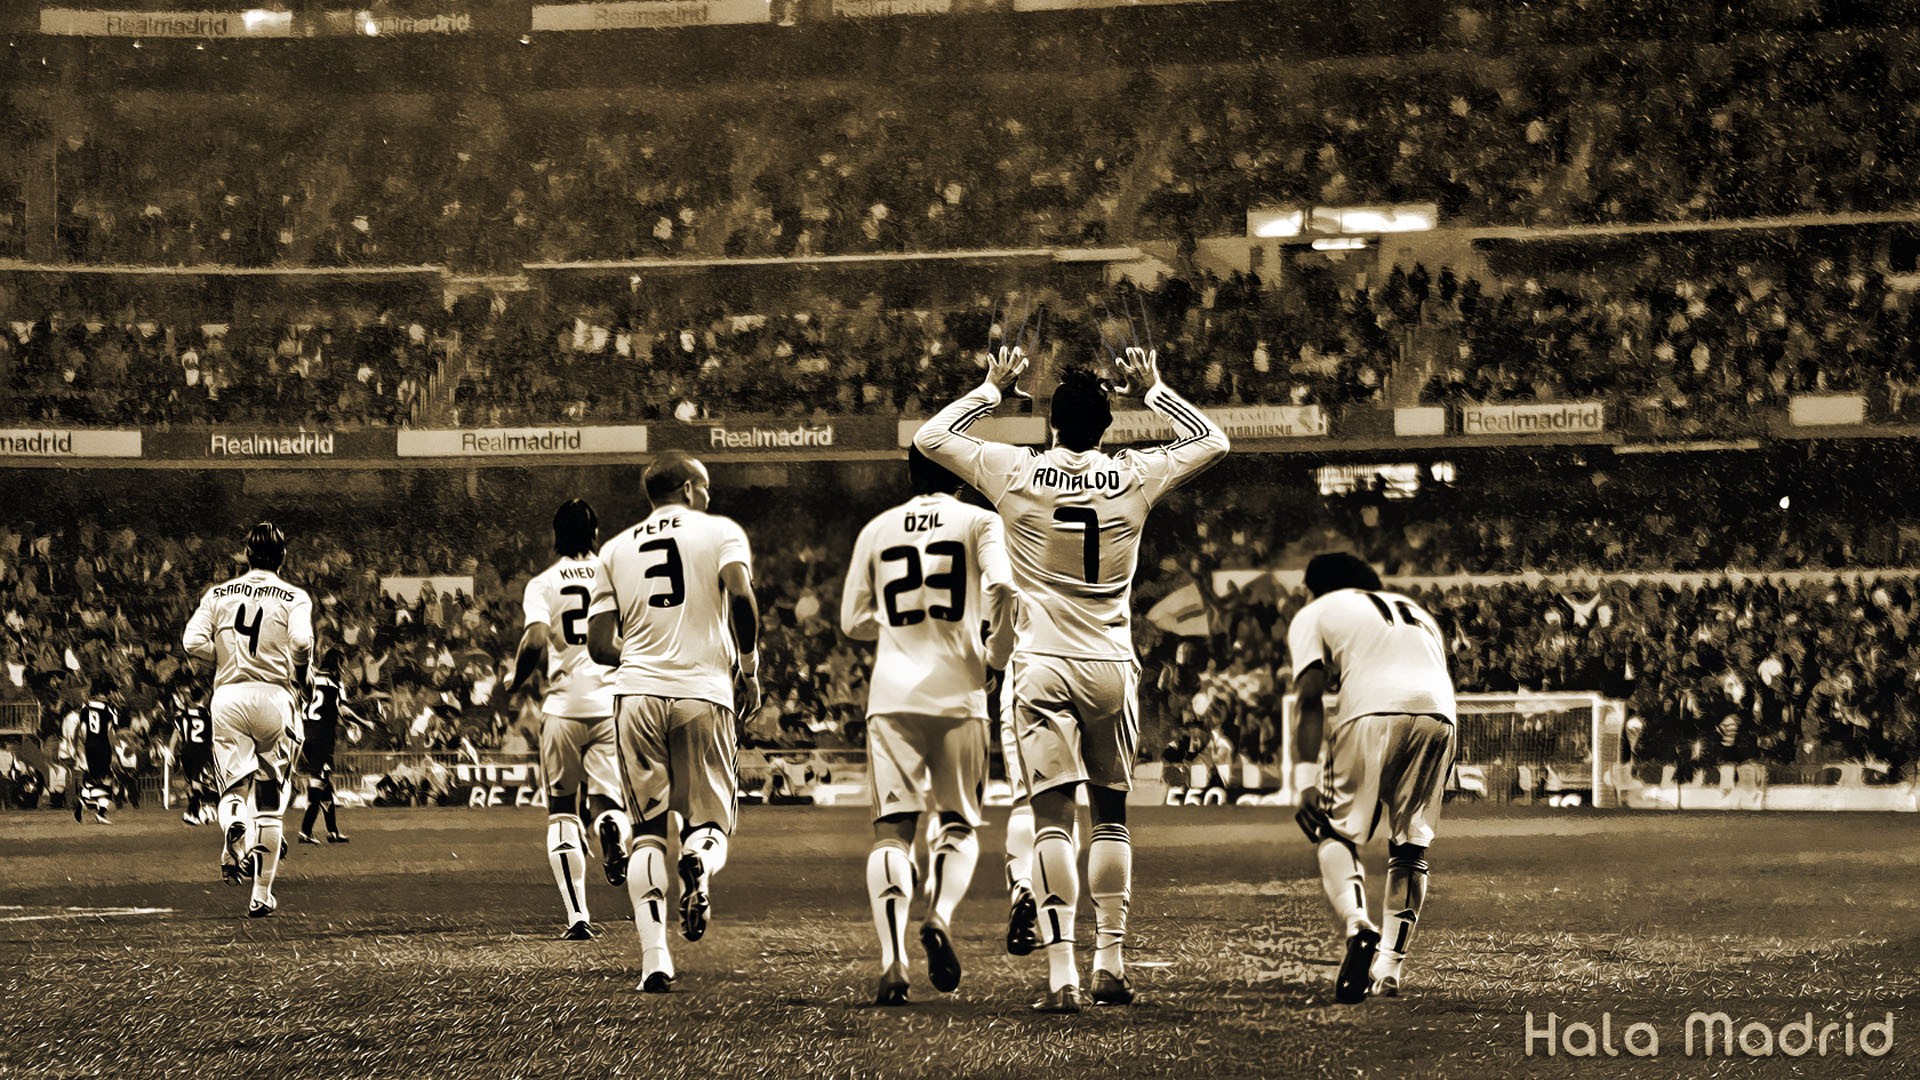 Chào mừng các fan của Real Madrid! \